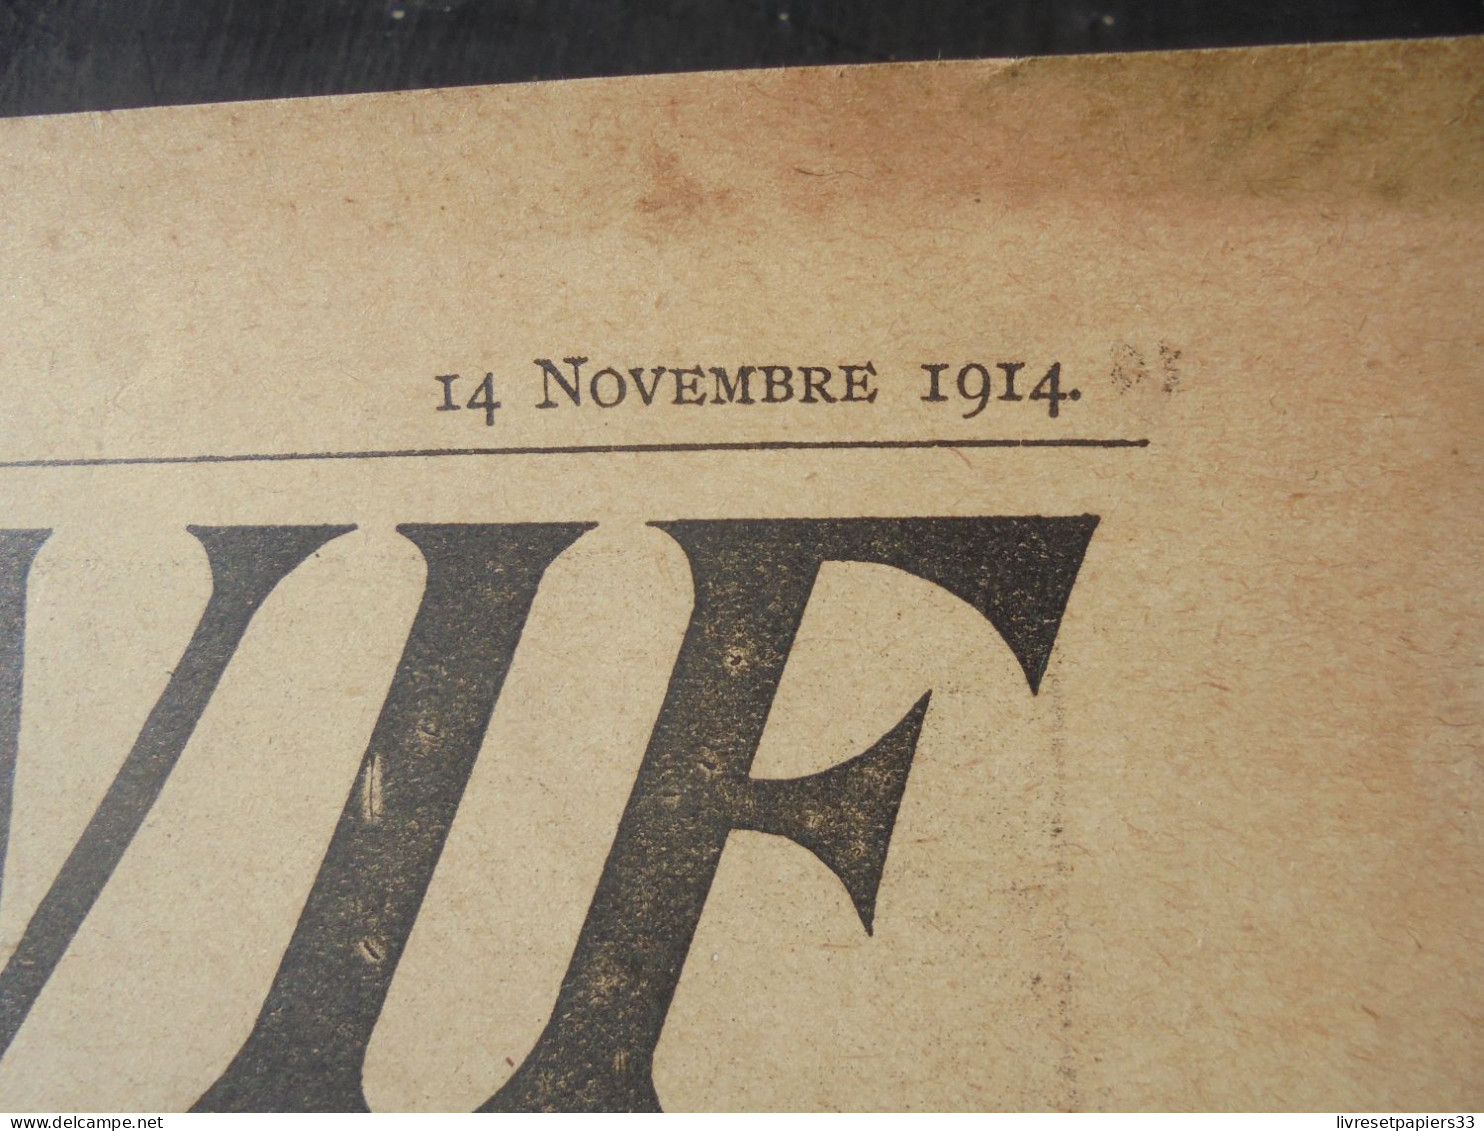 SUR LE VIF N°1 Revue 1914 Photos Et Croquis De Guerre WW1 - Francese